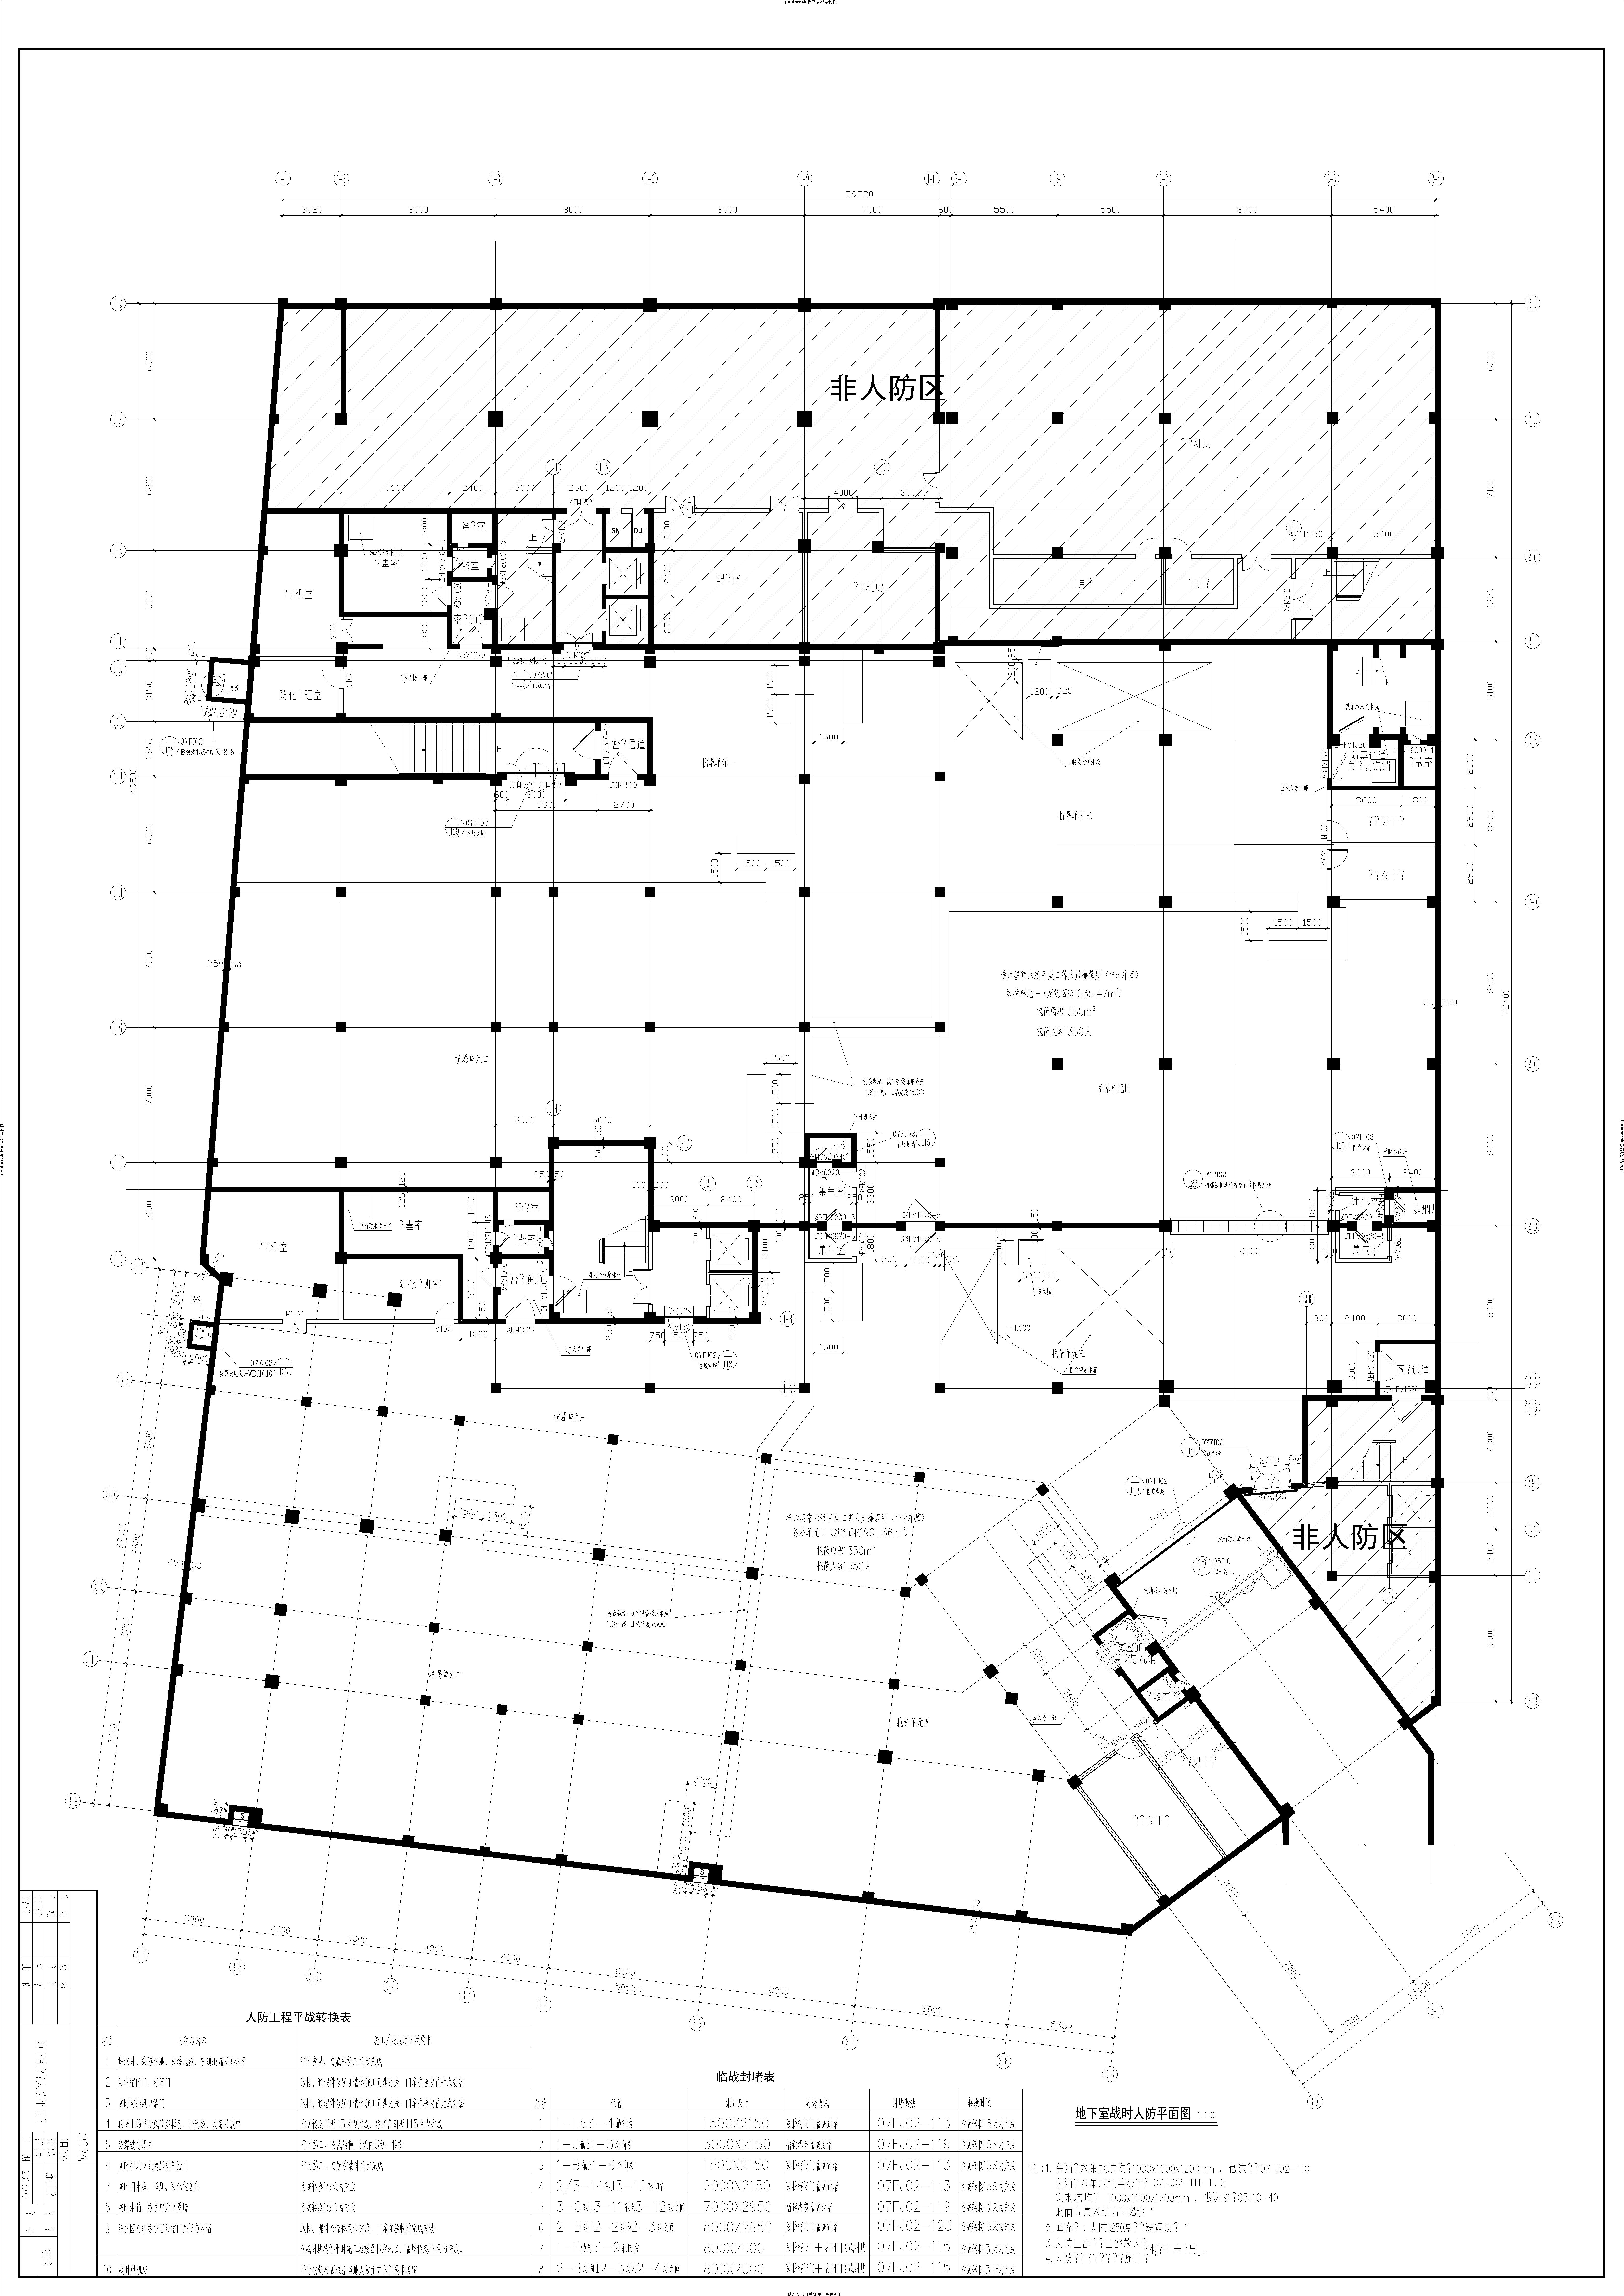 单层地下人防车库建筑结构设计施工图